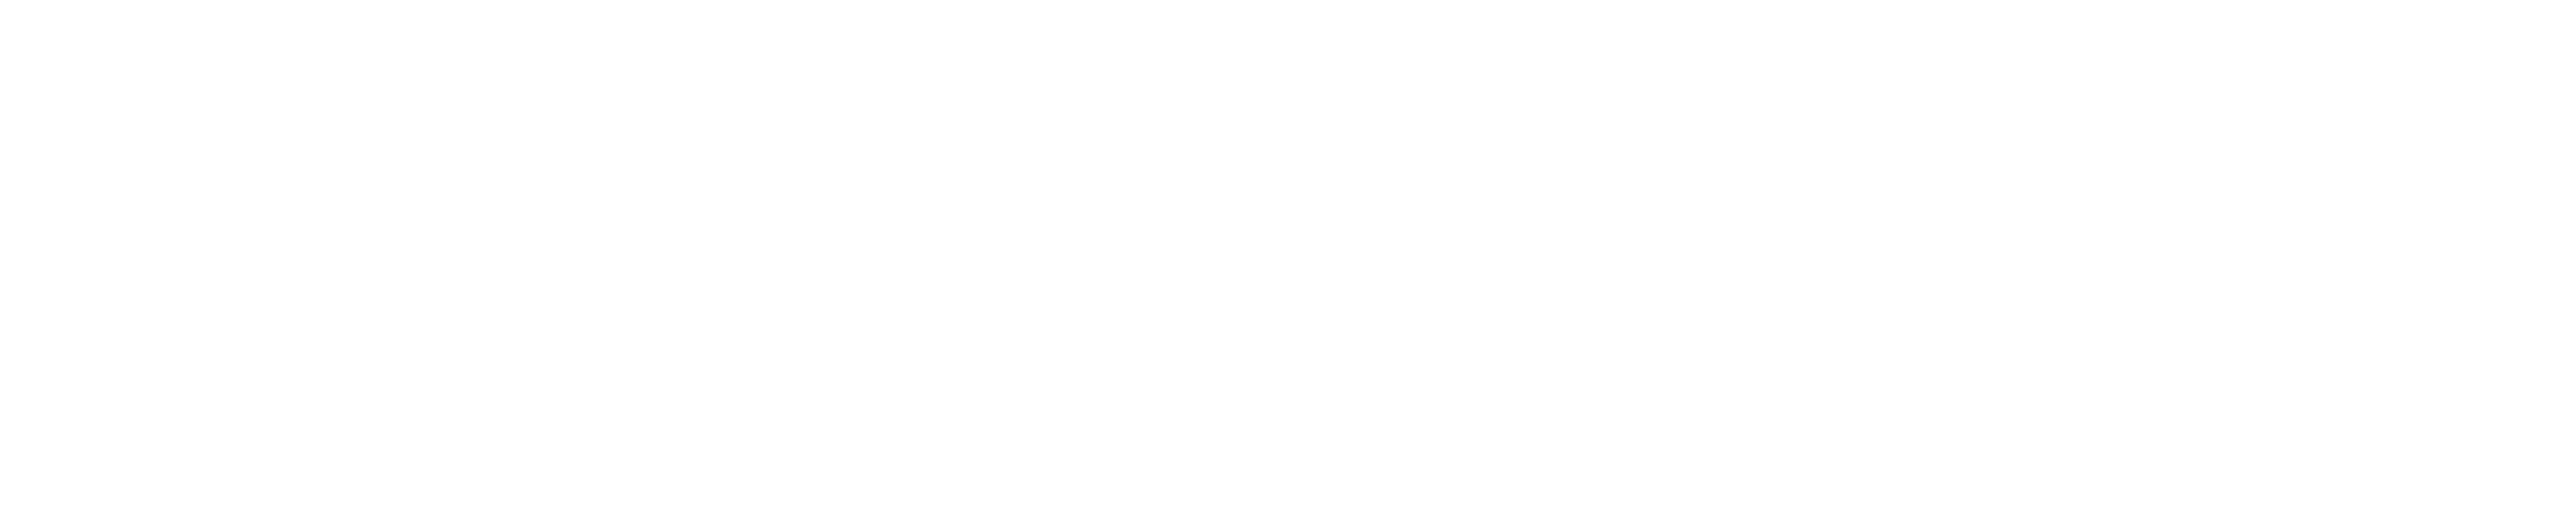 BLOCKSIZE - white logo